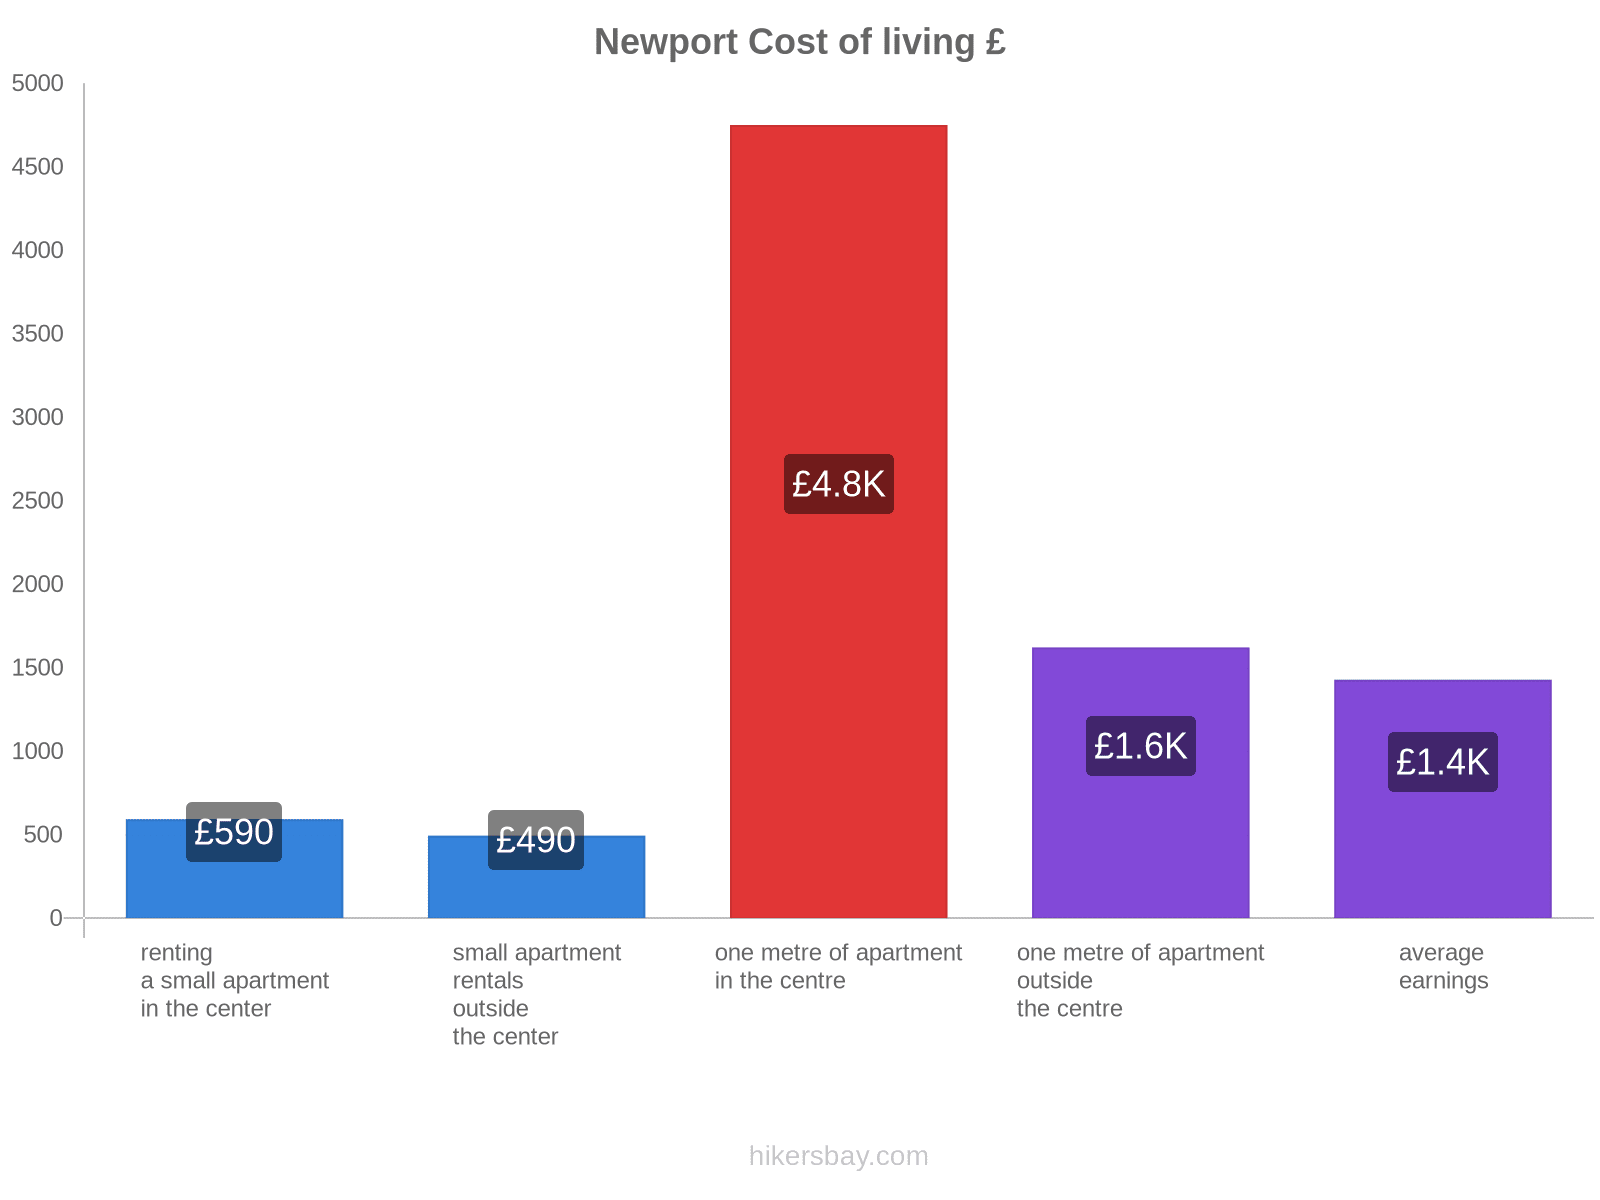 Newport cost of living hikersbay.com